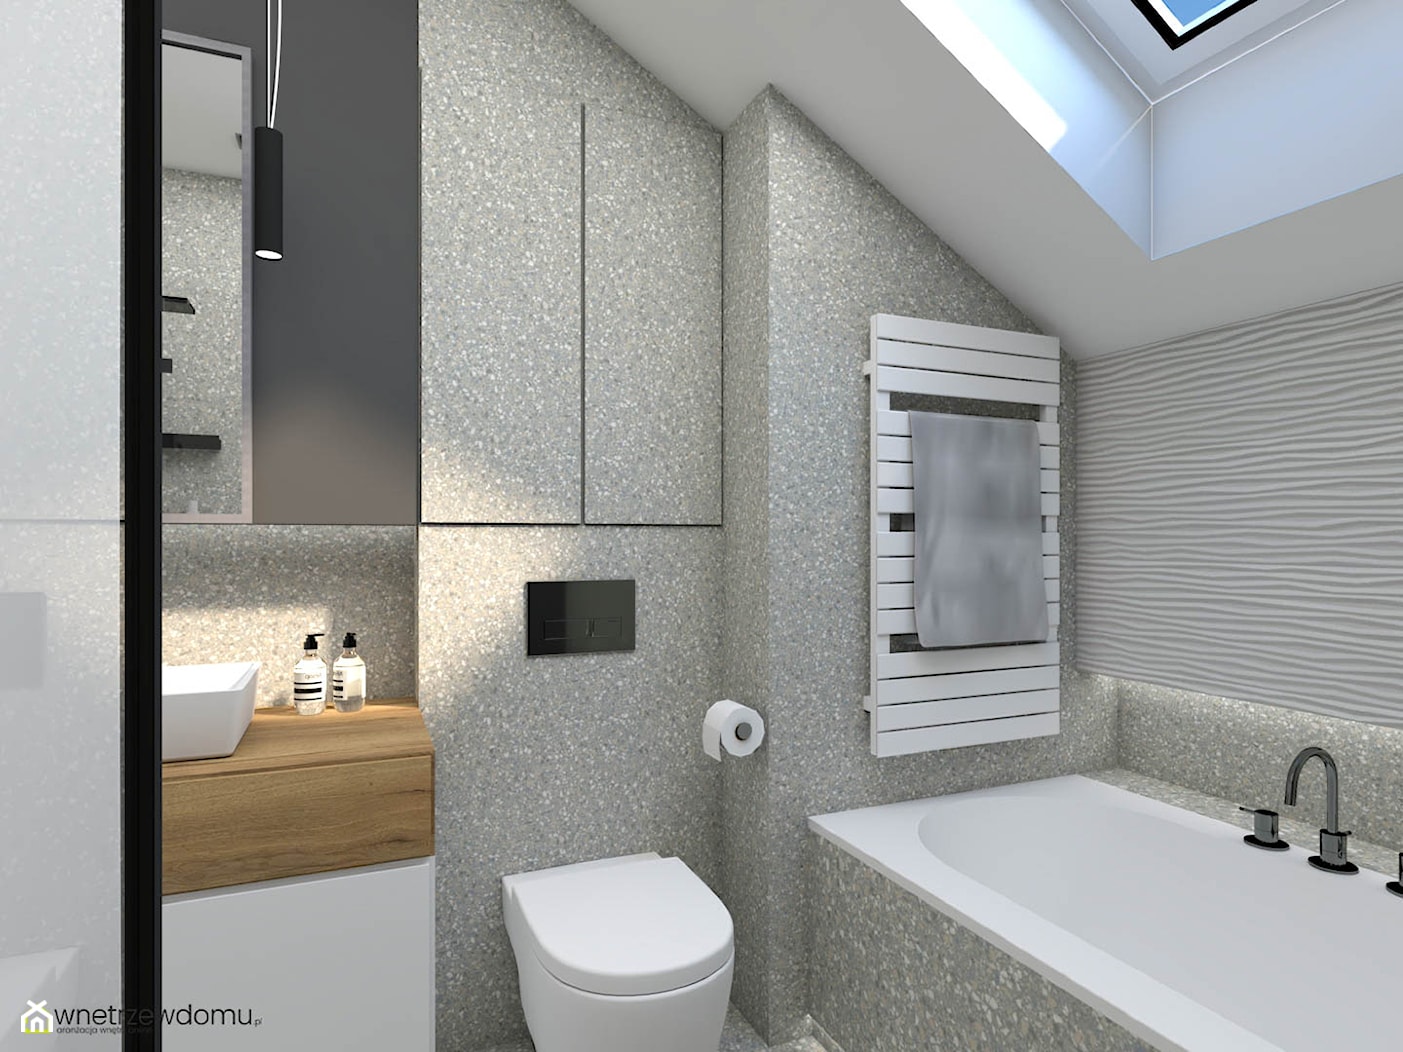 Nowoczesna łazienka z płytkami lastrico - zdjęcie od wnetrzewdomu - Homebook